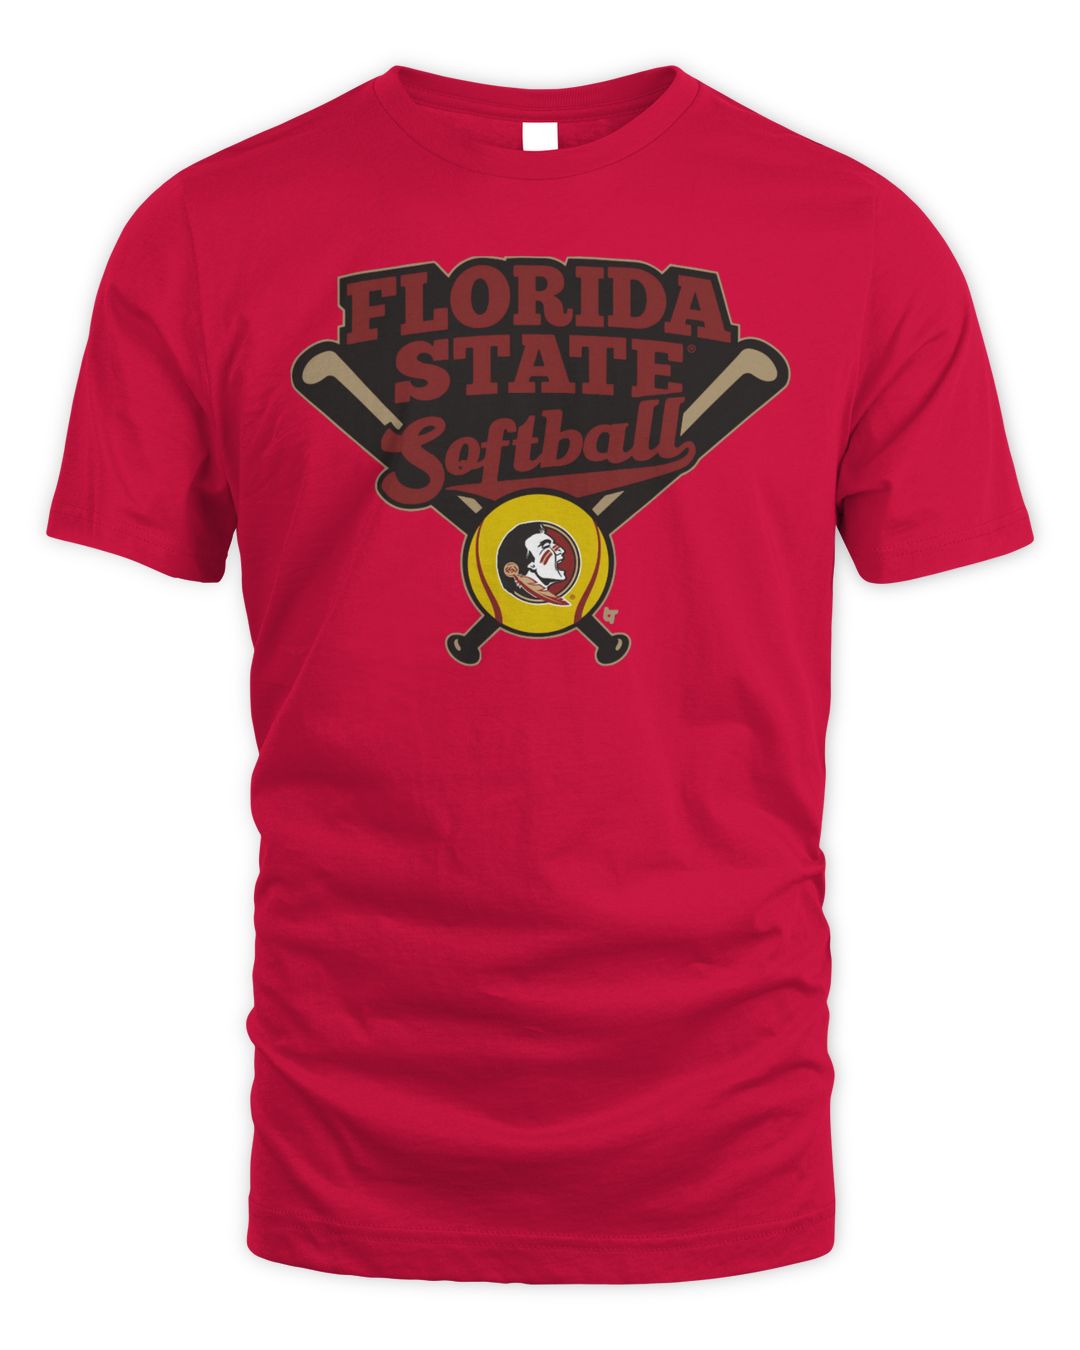 Florida State Softball Shirt